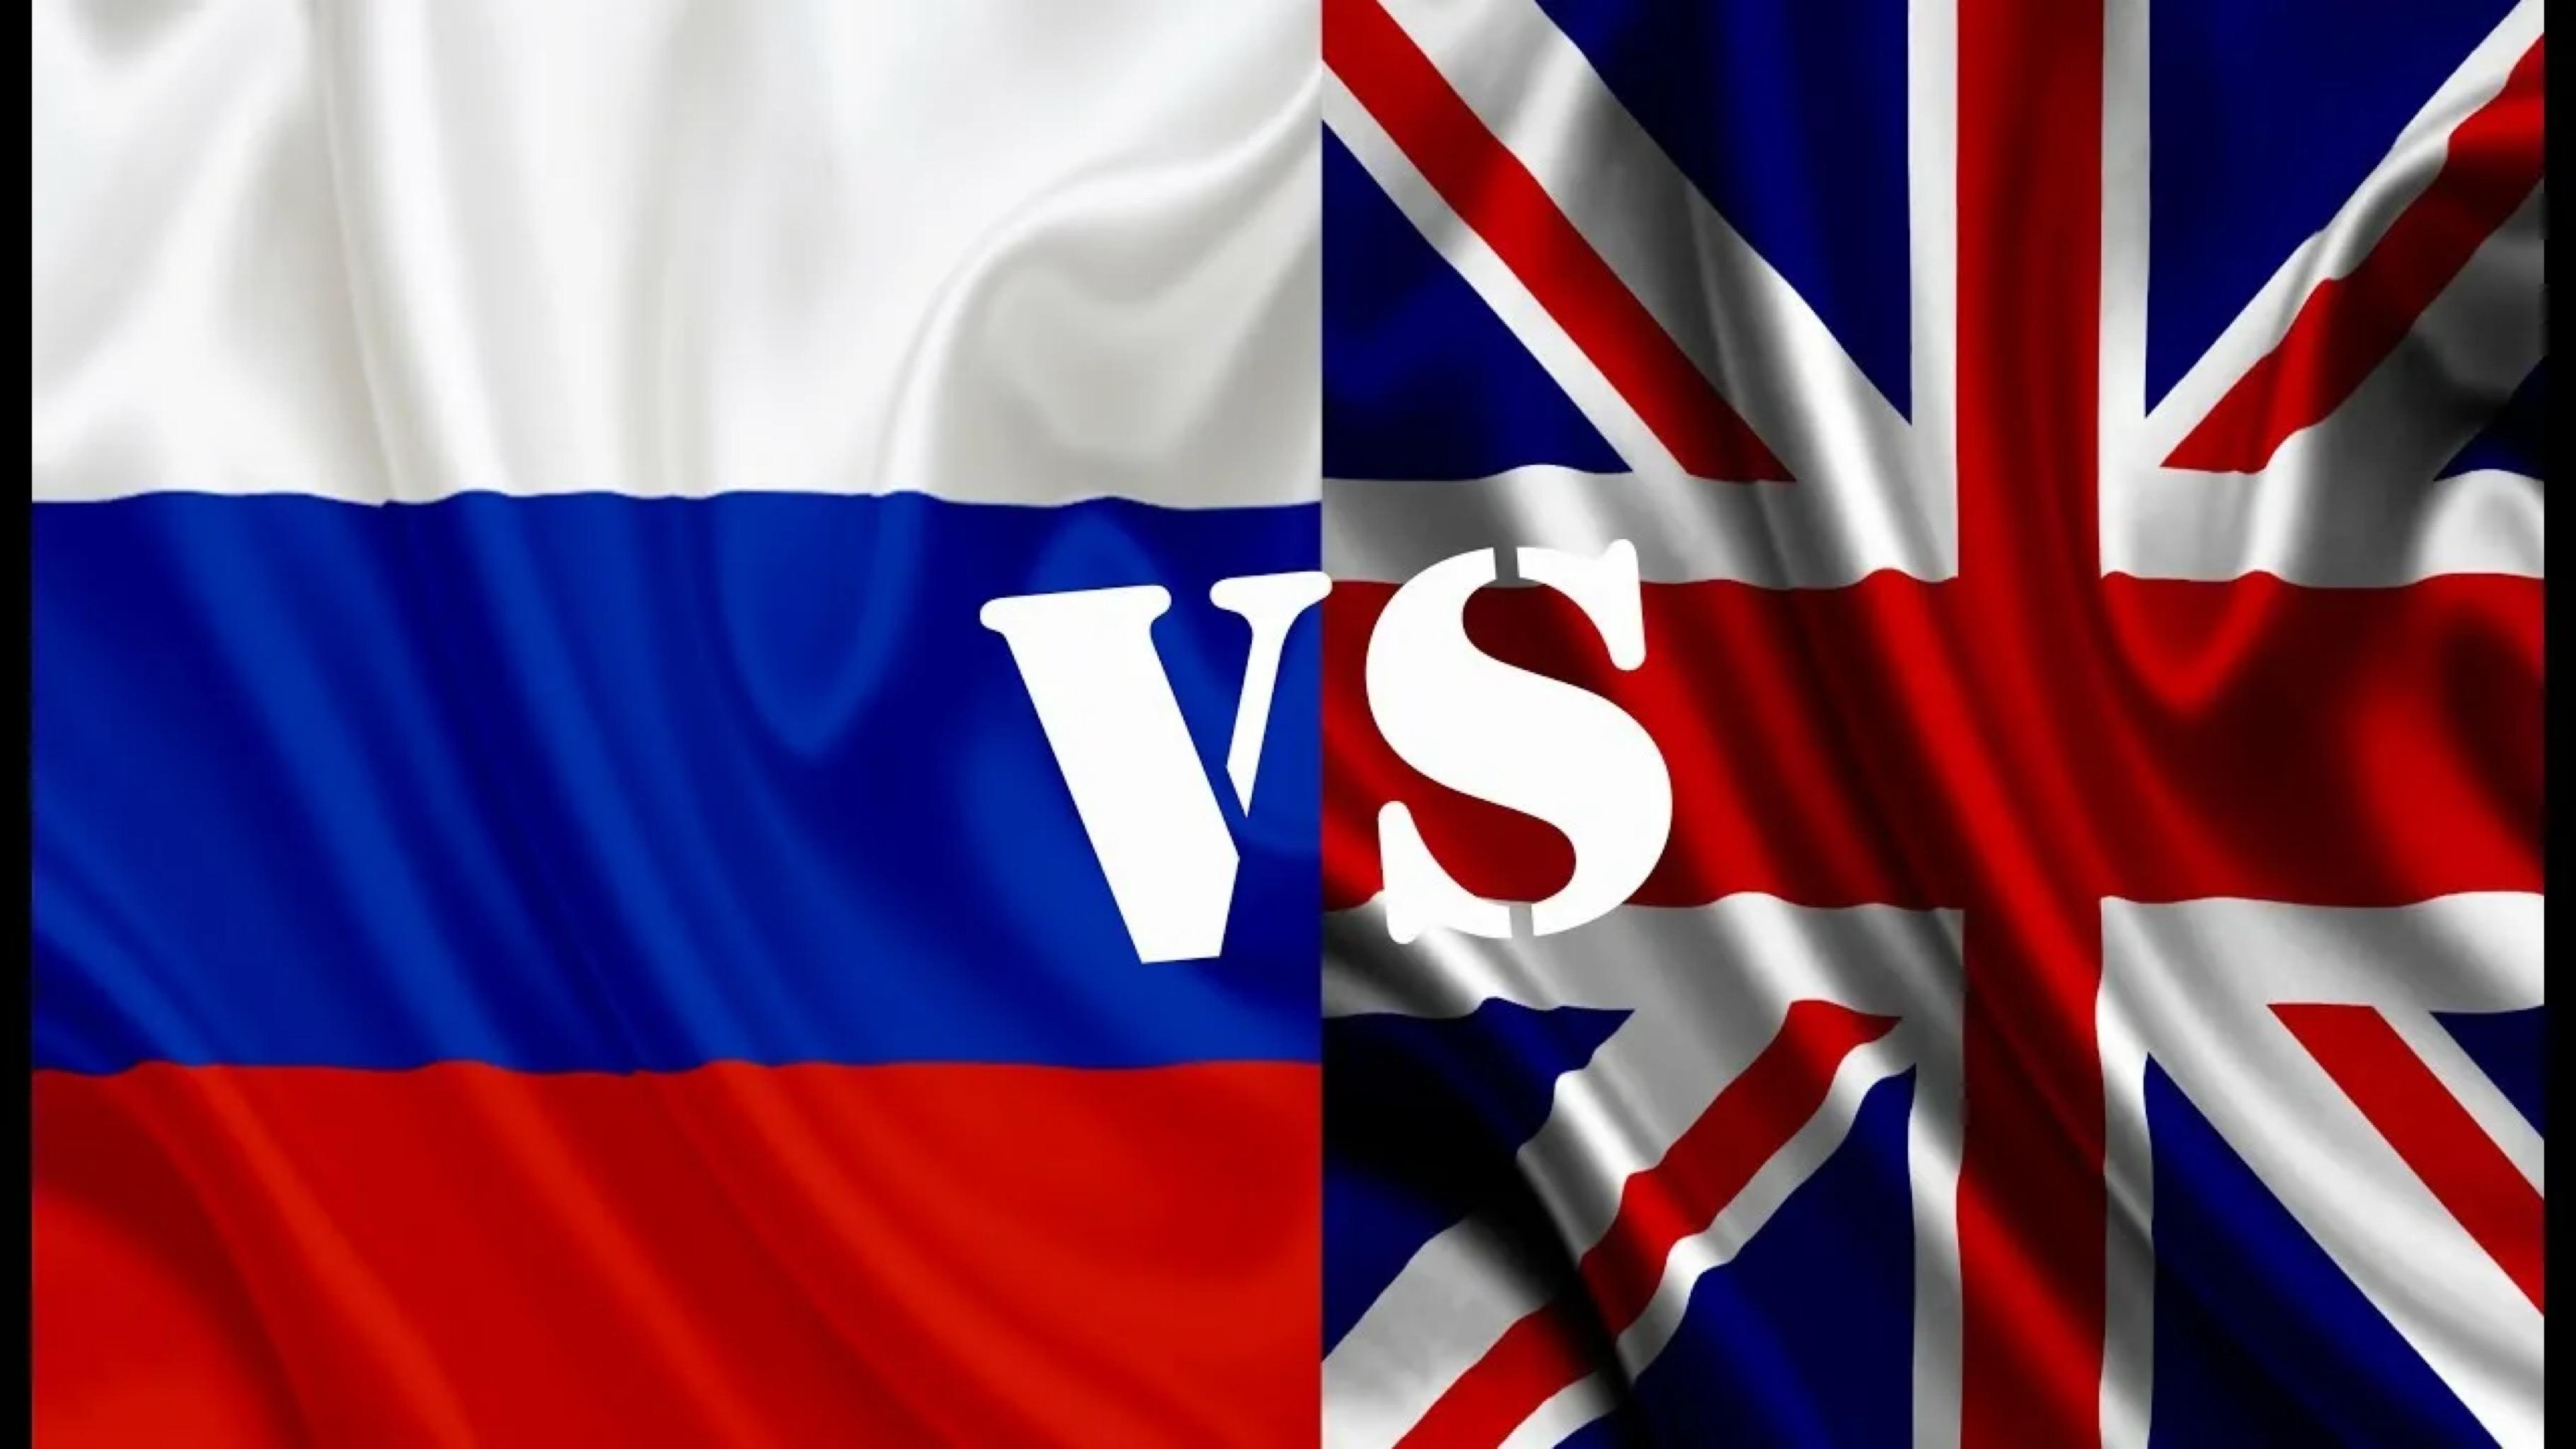 Быть против на английском. С русского на английский. Русский vs английский. Русский язык на английском. Россия vs Великобритания.